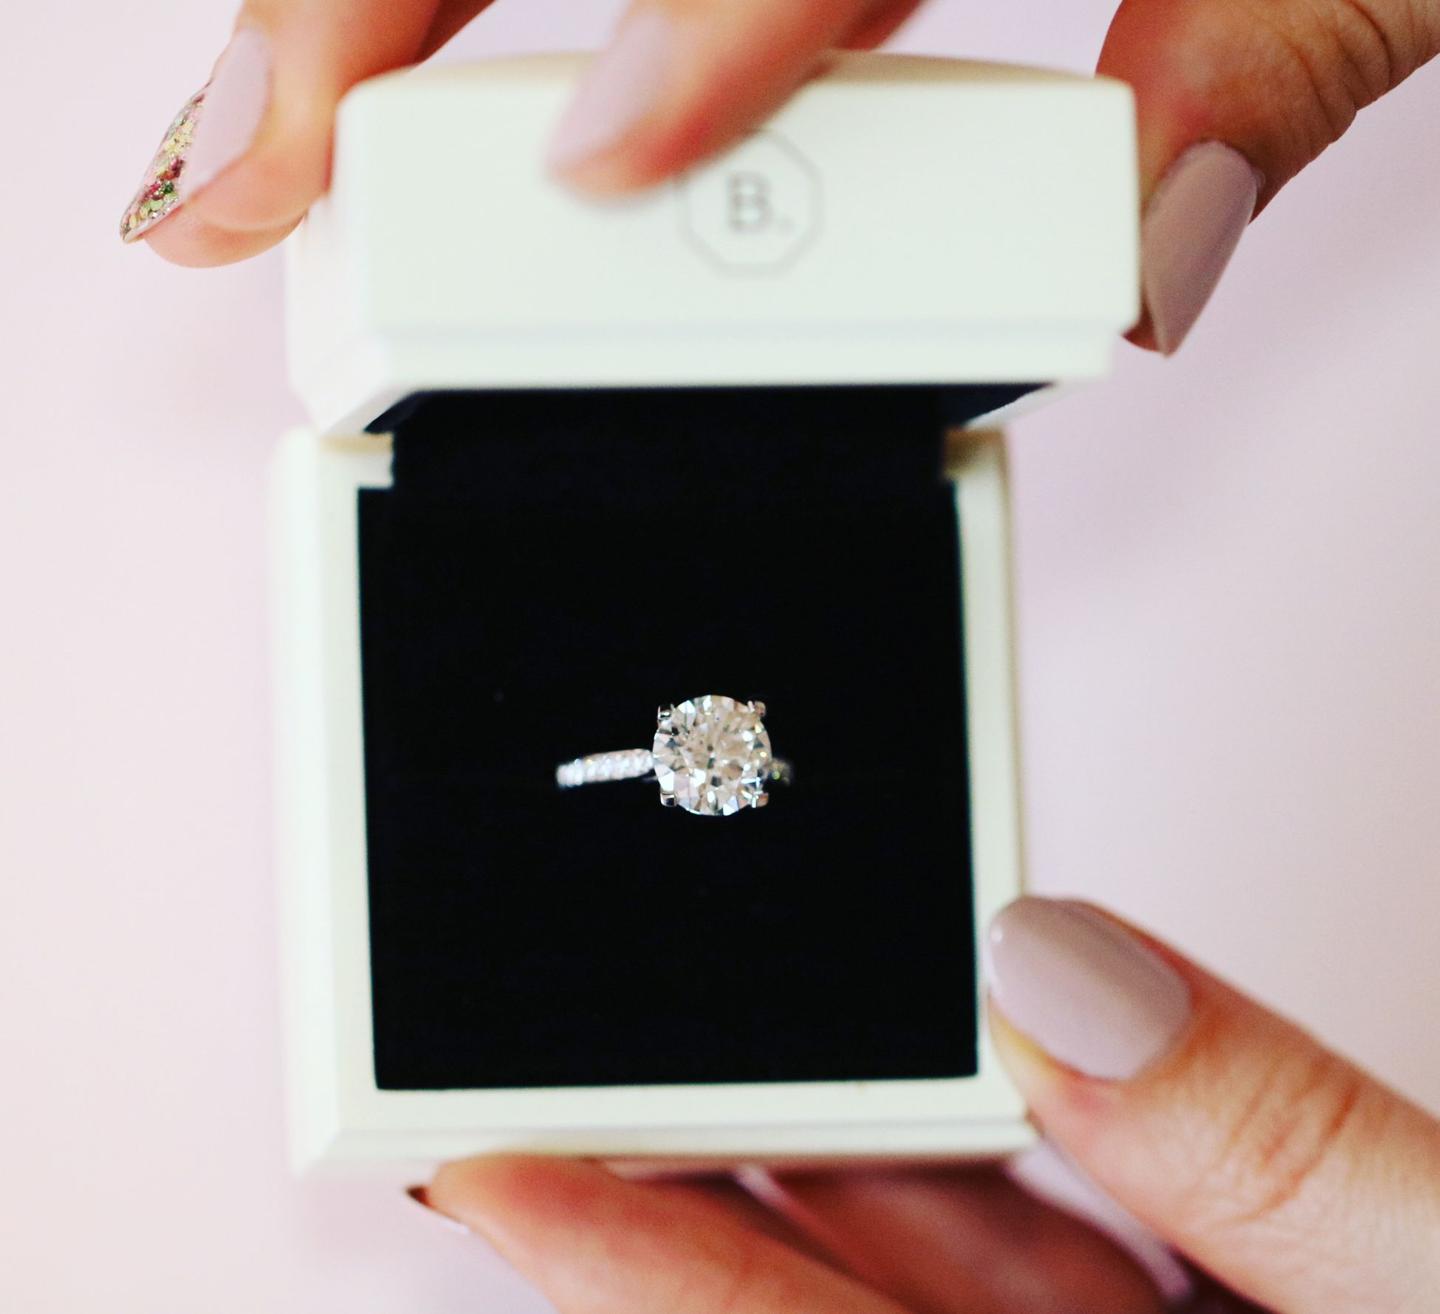 Het doosje van uw BAUNAT ring kan perfect gebruikt worden tijdens uw huwelijksaanzoek.